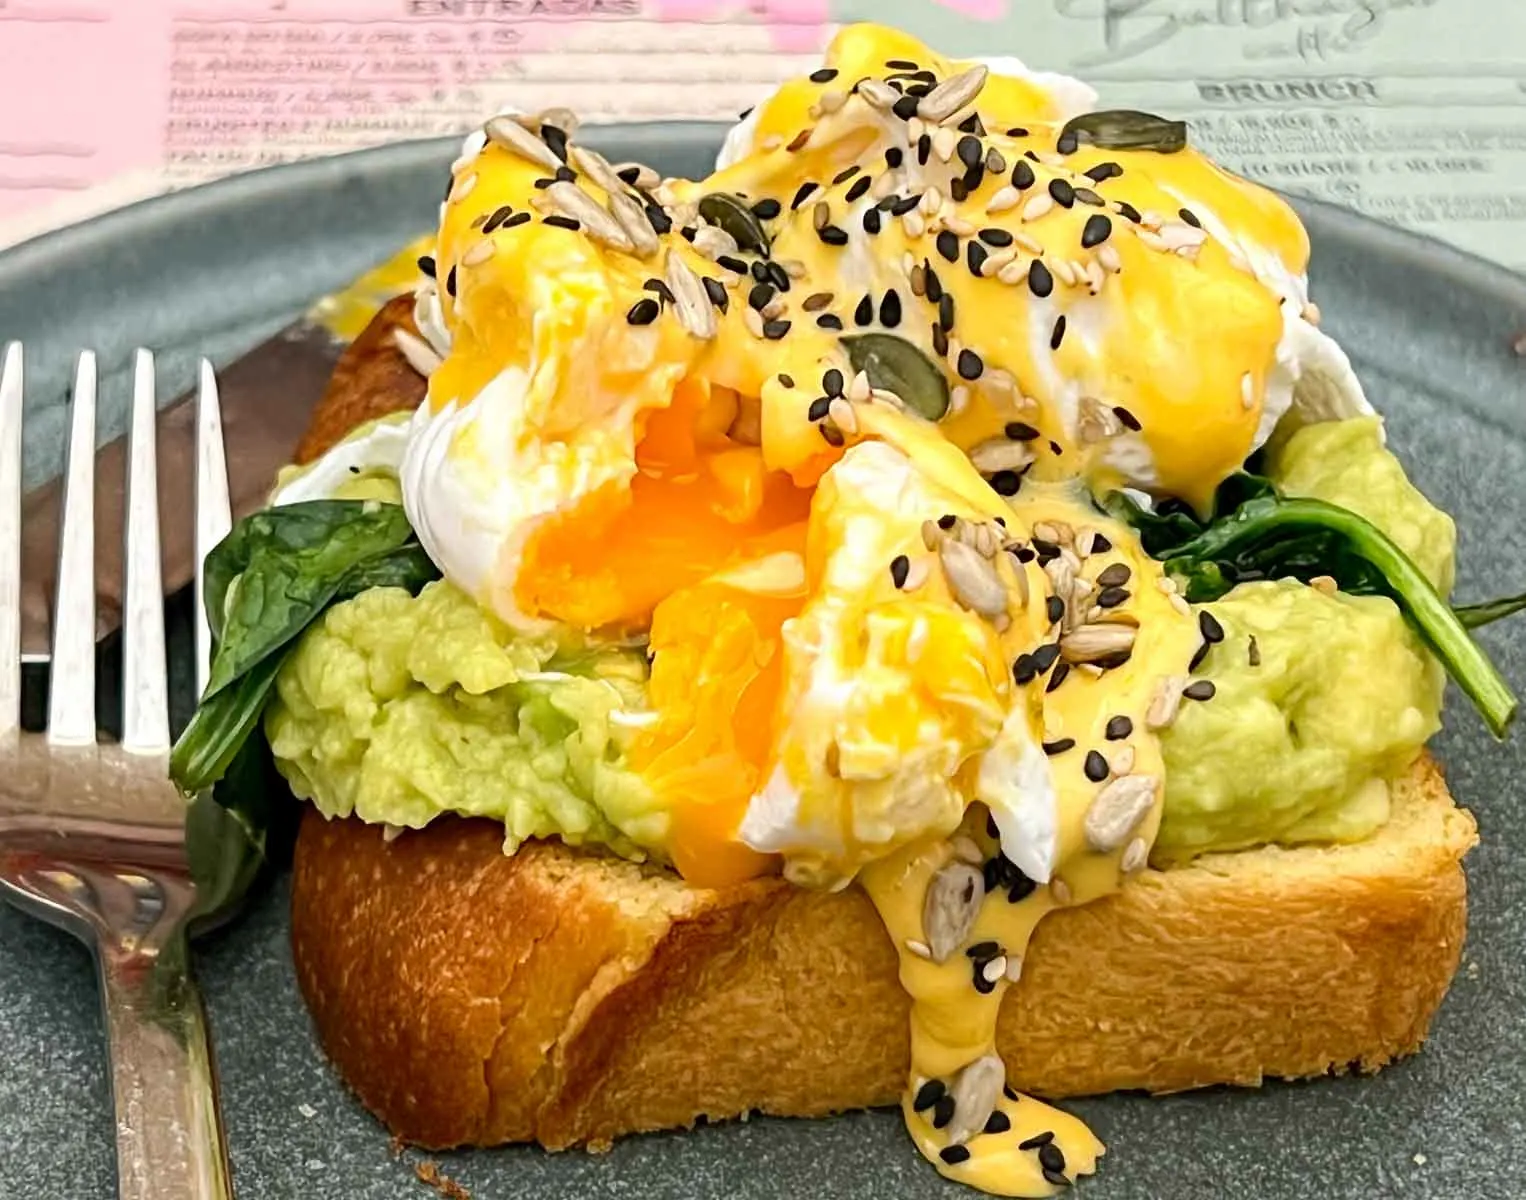 Avocado Egg Toast at Garden Balthazar Caffe in Lisbon